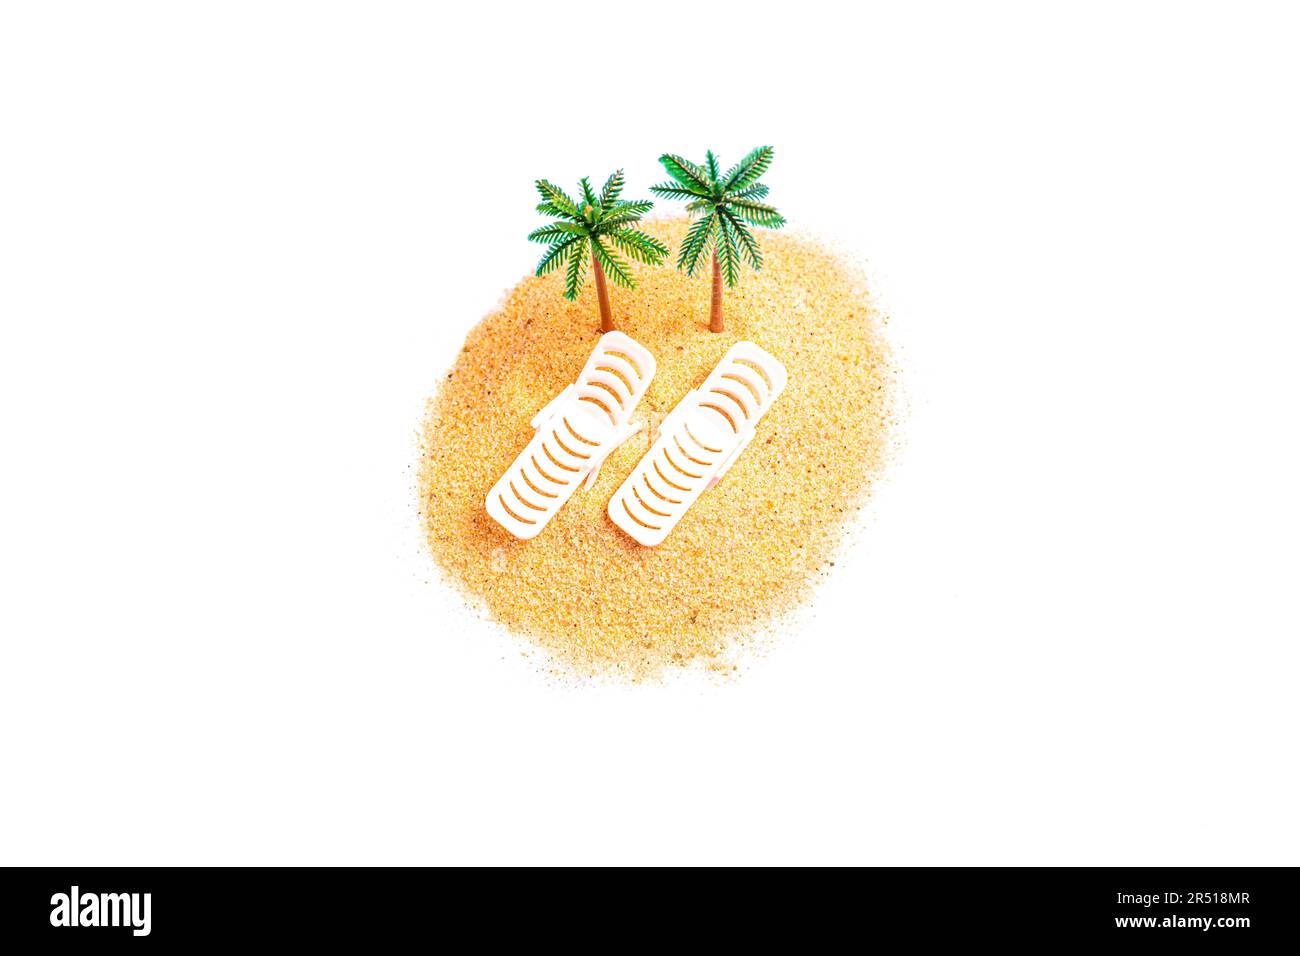 Draufsicht eines Miniaturspielzeugs mit Sonnenliegen und Palmenfiguren auf einem kleinen Sandhaufen, isoliert auf weißem Hintergrund. Kreatives Tro Stockfoto